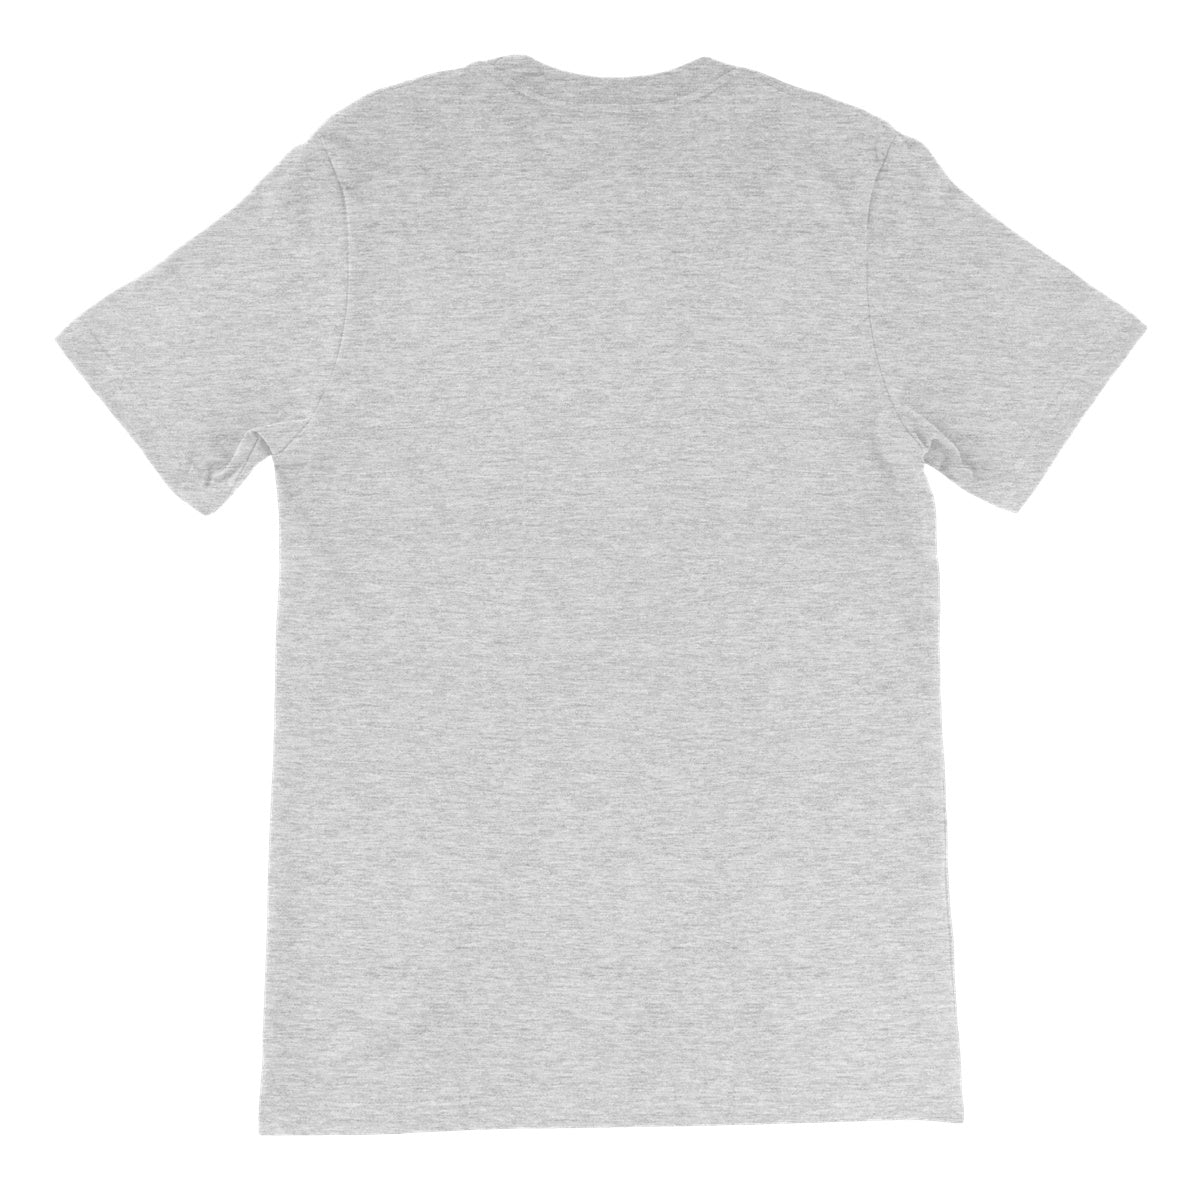 Nature Lady Unisex Short Sleeve T-Shirt